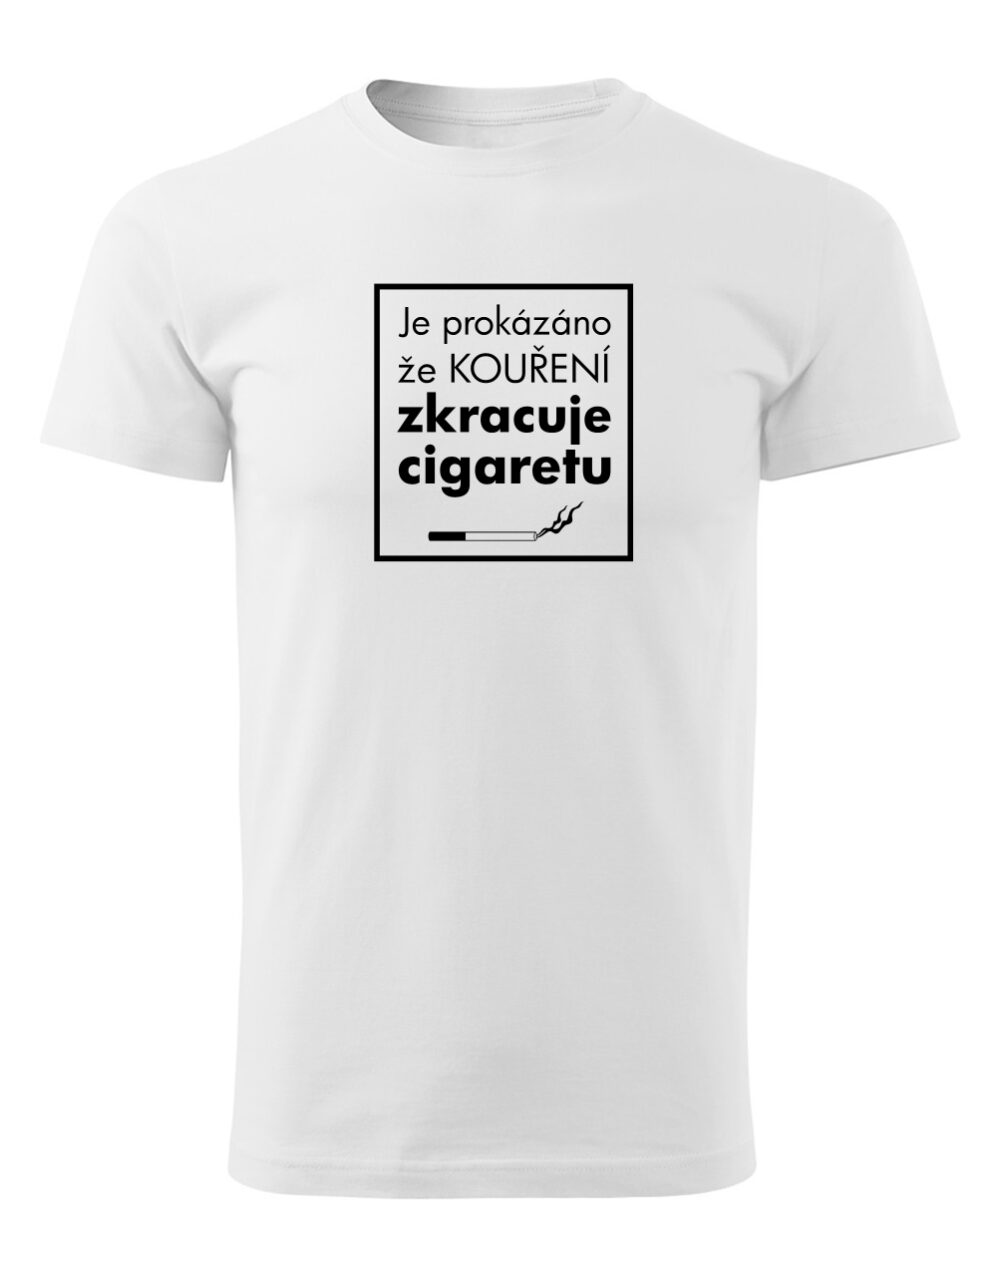 Pánské tričko s potiskem Kouření zkracuje cigaretu bílá